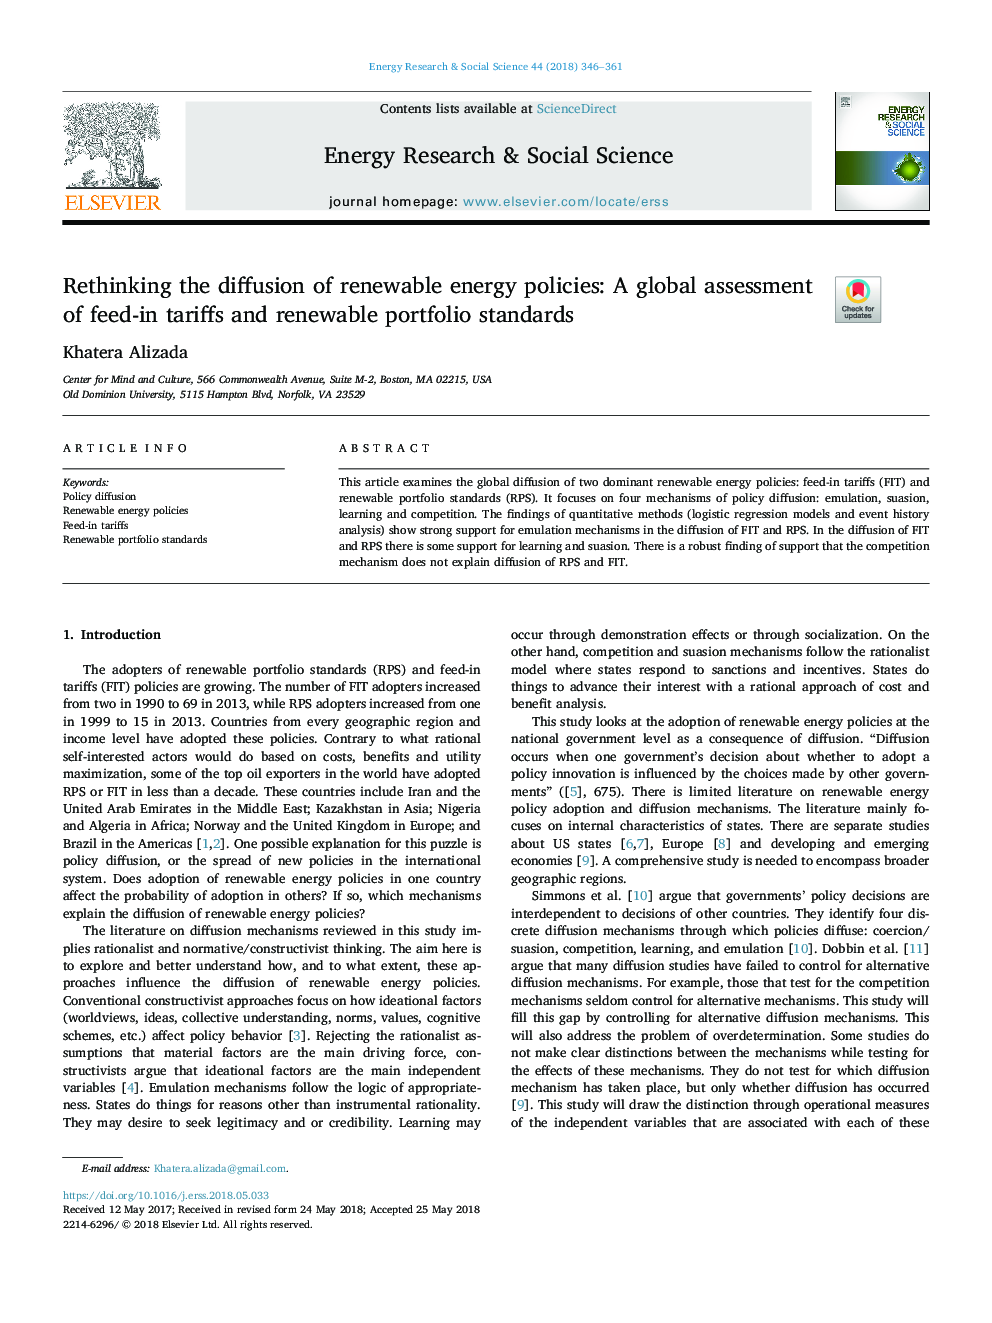 انتقاد از انتشار سیاست های انرژی تجدید پذیر: ارزیابی جهانی از تعرفه های خوراک و استانداردهای بازاریابی تجدید پذیر 